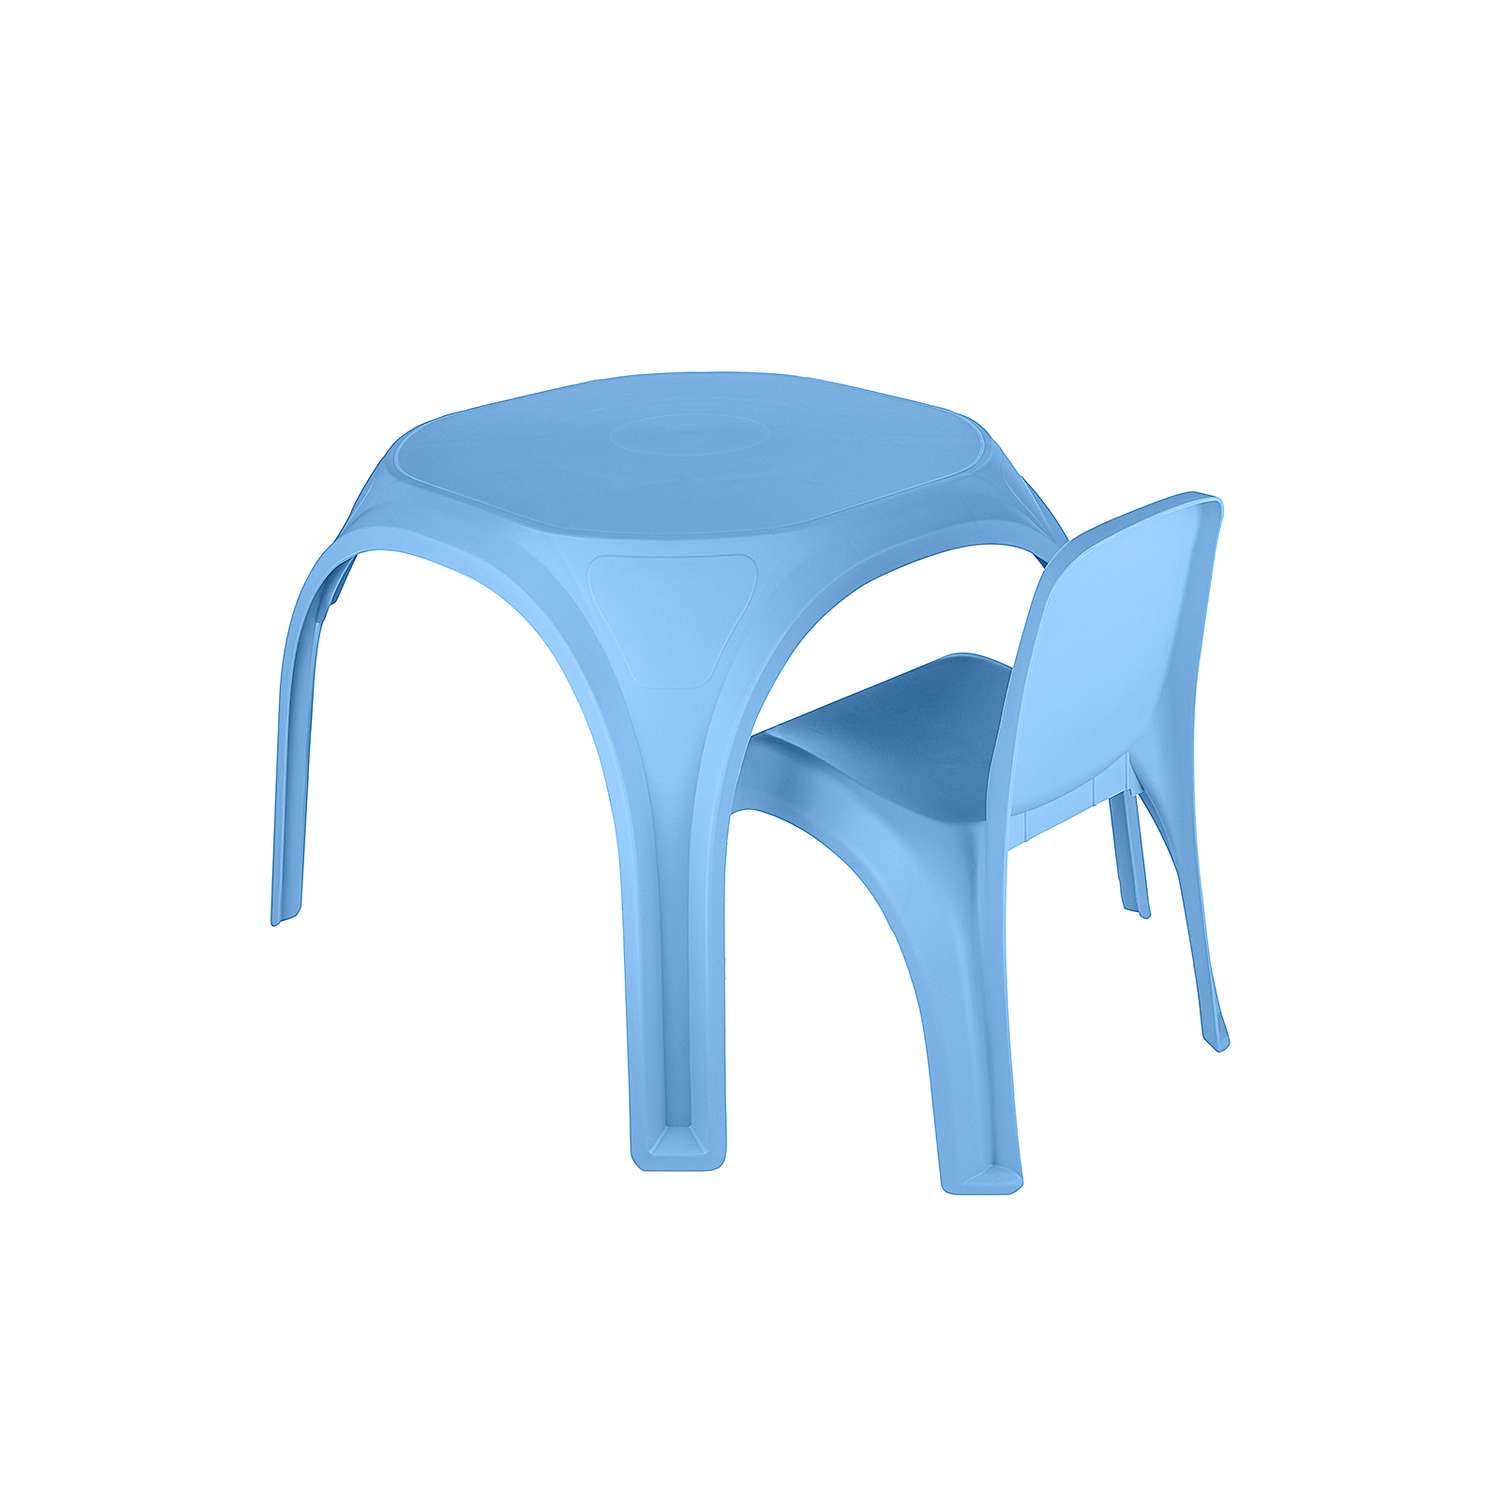 Стол десткий KETT-UP ОСЬМИНОЖКА пластиковый голубой - фото 5